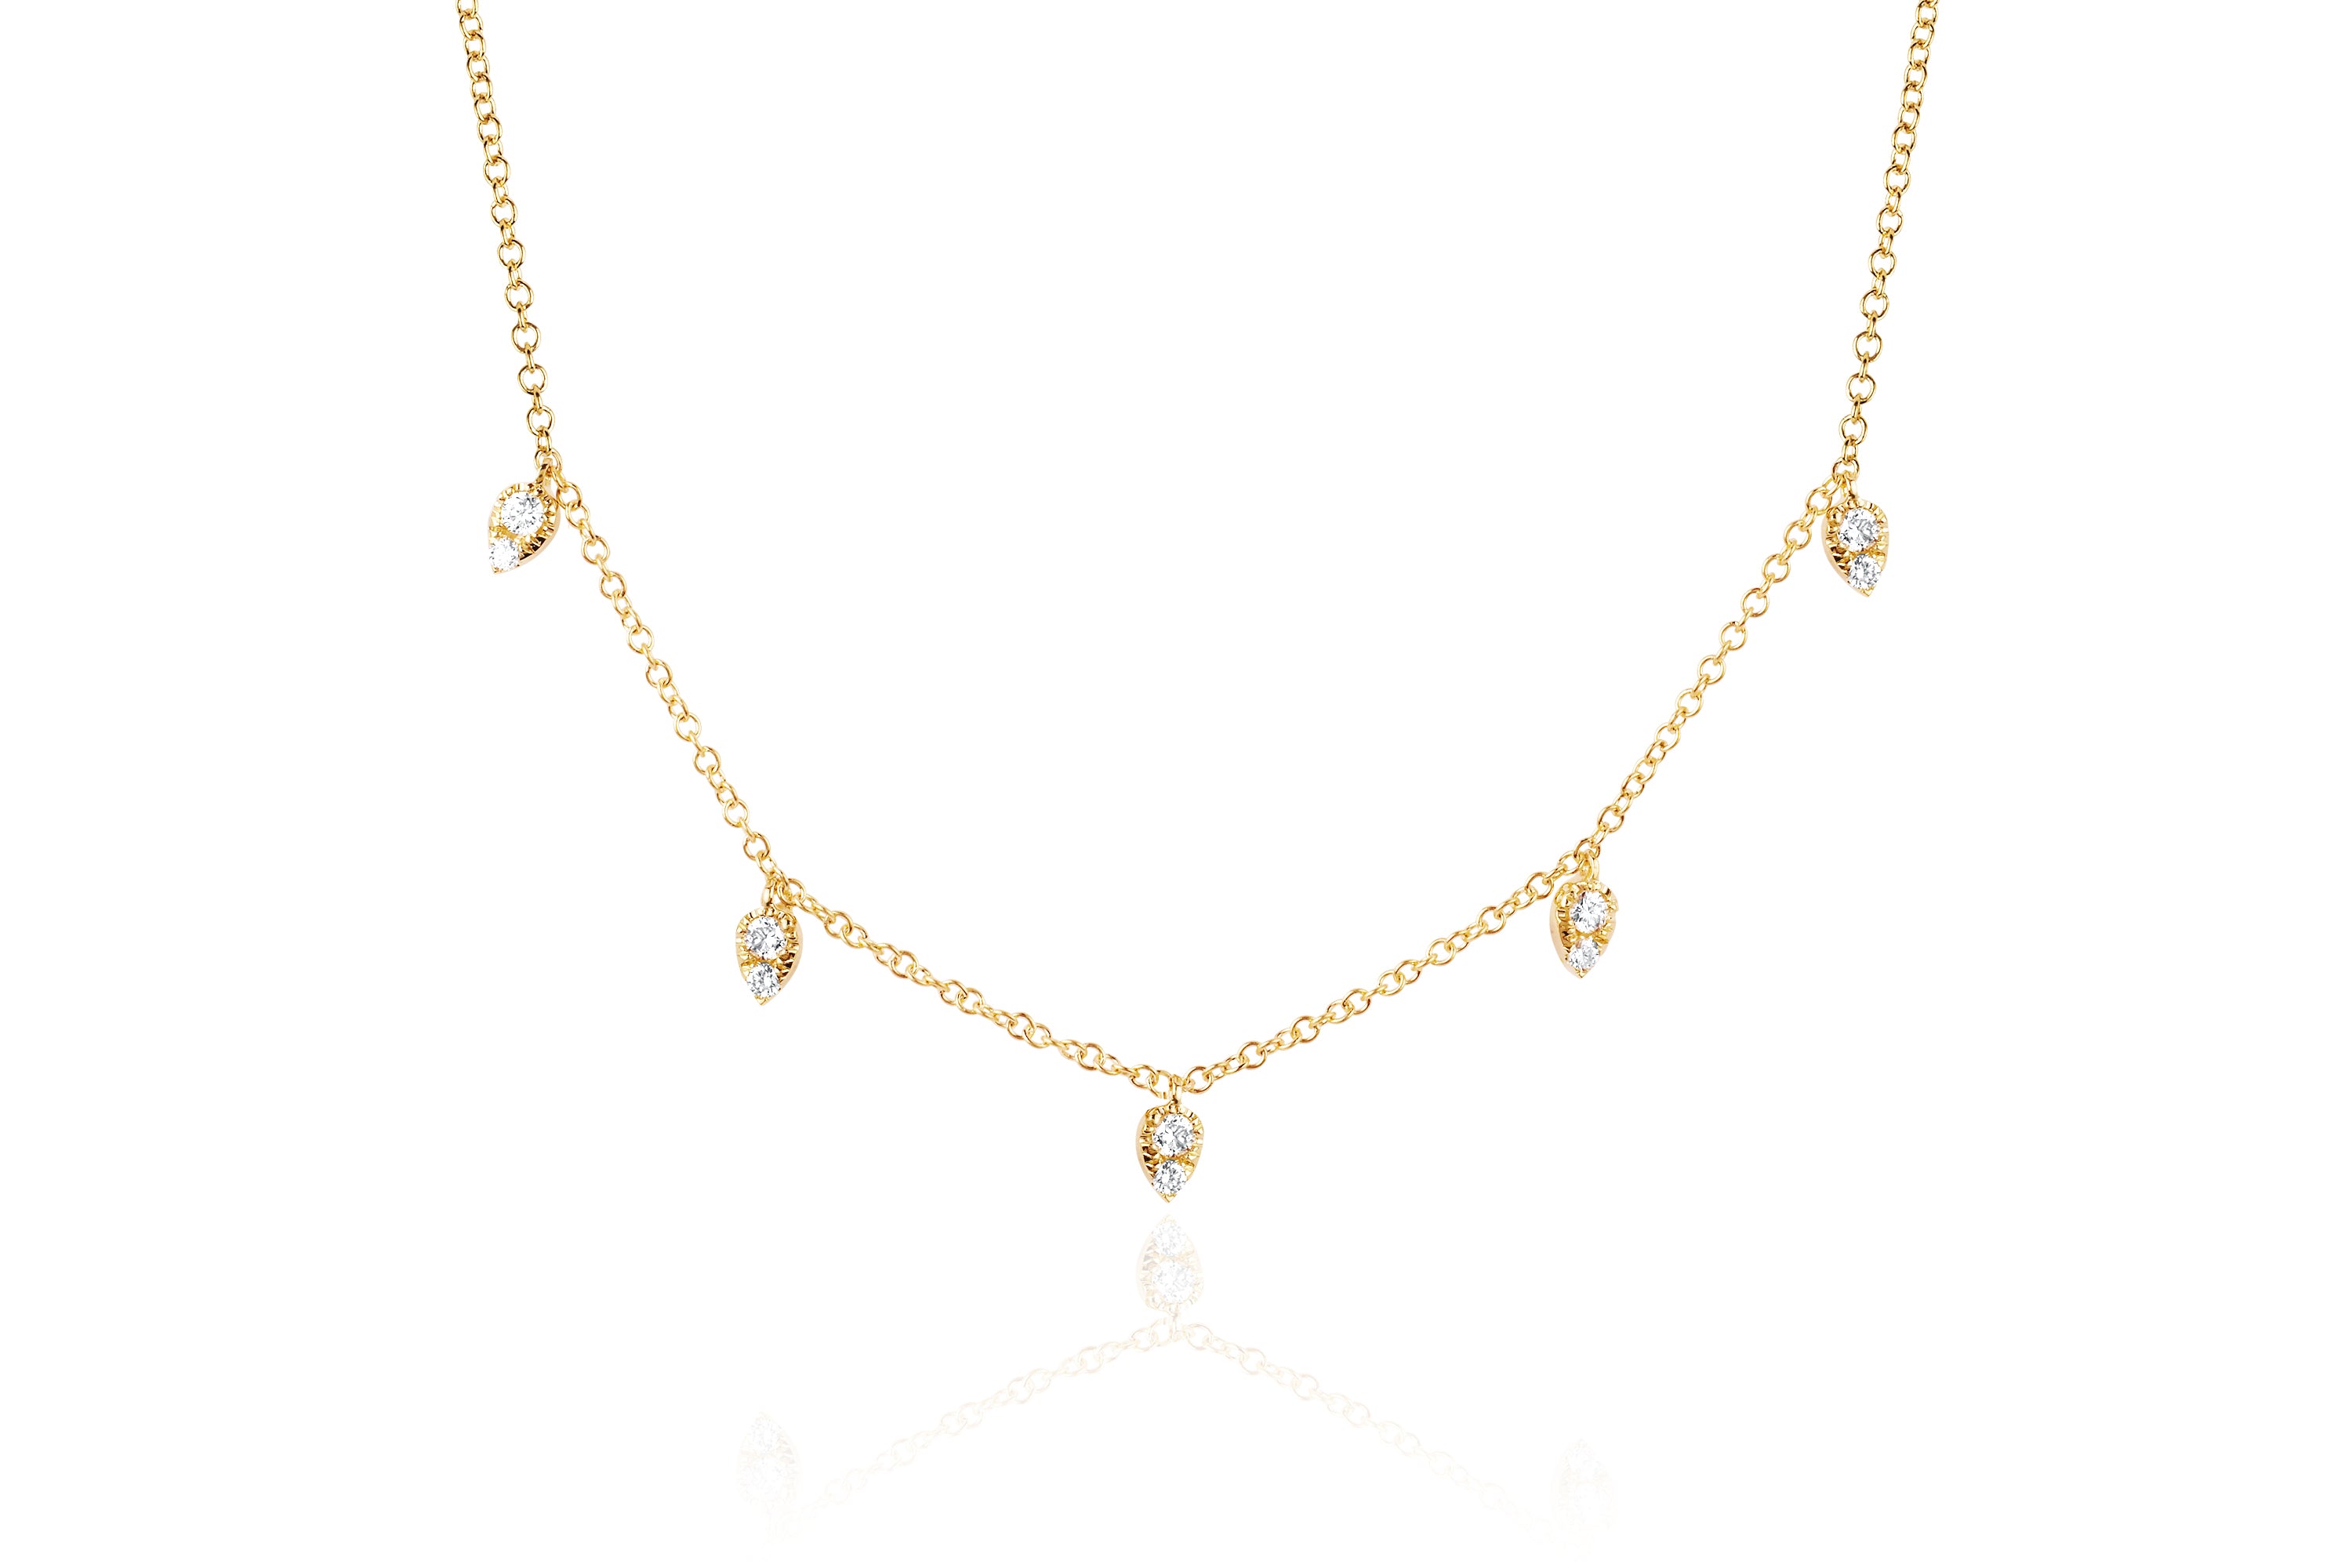 Diamond 5 Teardrop Choker Necklace in 14k yellow gold